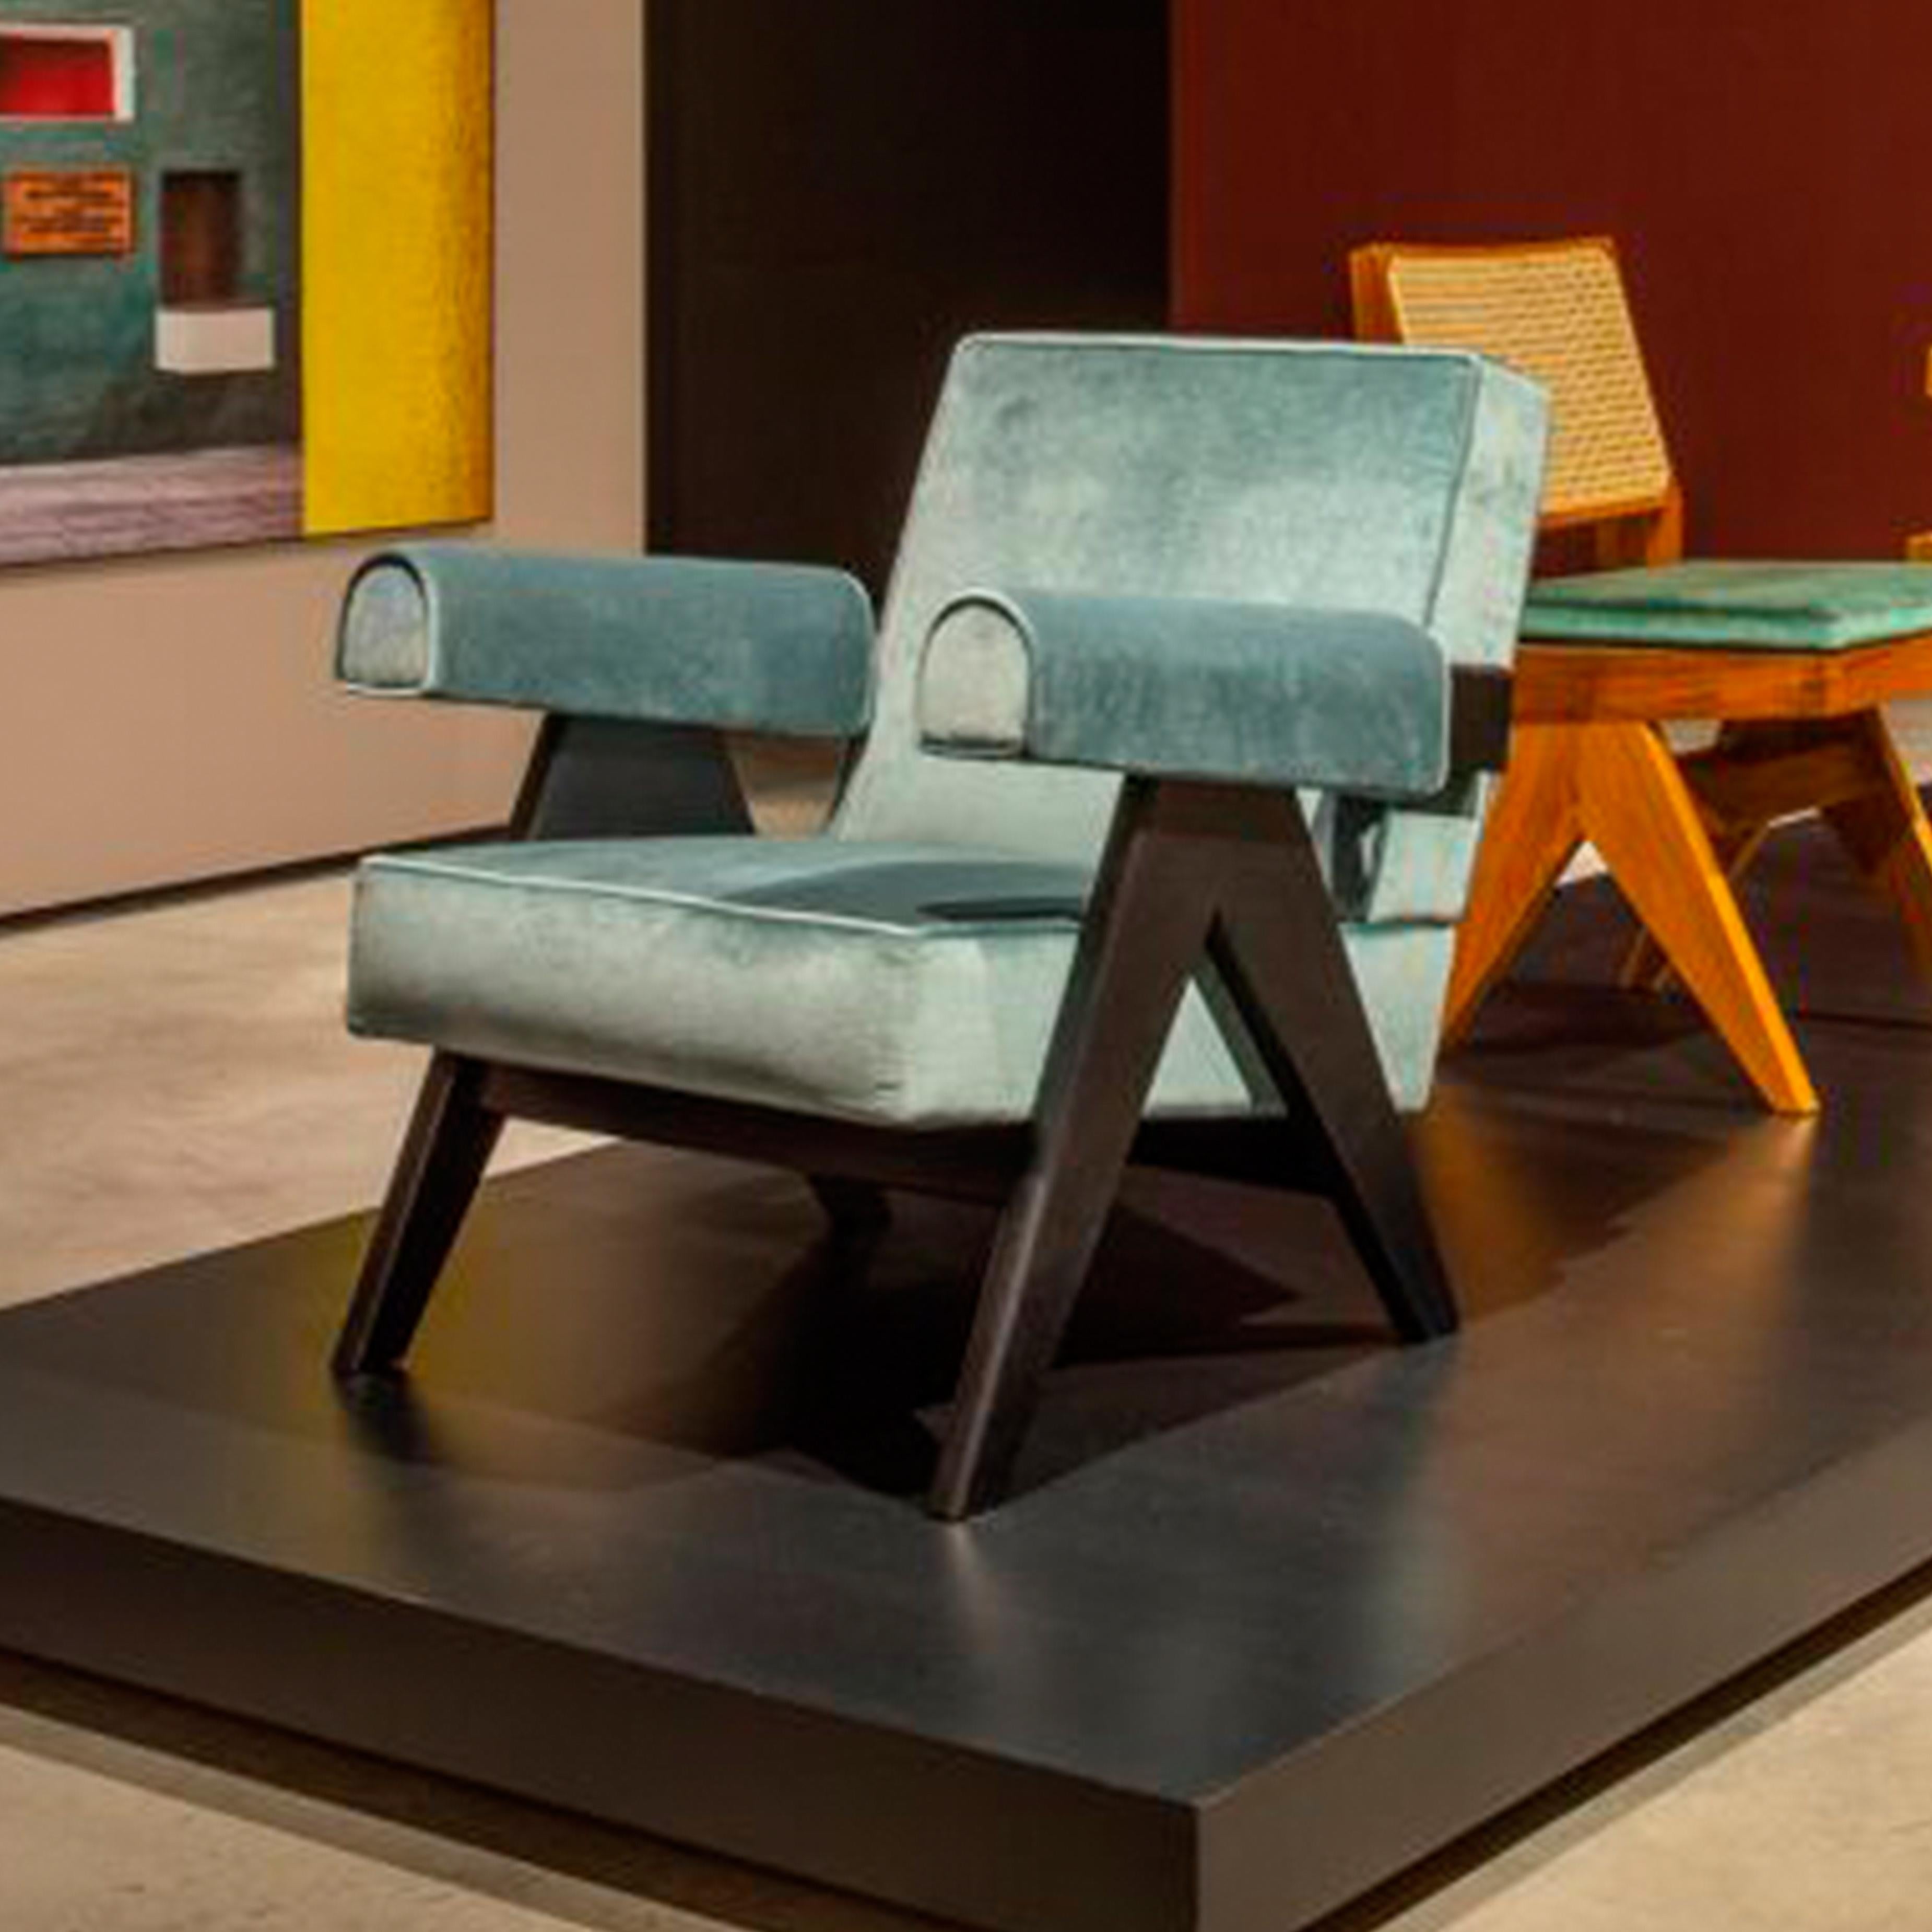 Sessel, entworfen von Pierre Jeanneret um 1950, neu aufgelegt 2019.
Hergestellt von Cassina in Italien.

Die außergewöhnliche Architektur des 1951 von Chandigarh entworfenen Le Corbusiers Capitol Complex, das in die Liste des UNESCO-Kulturerbes